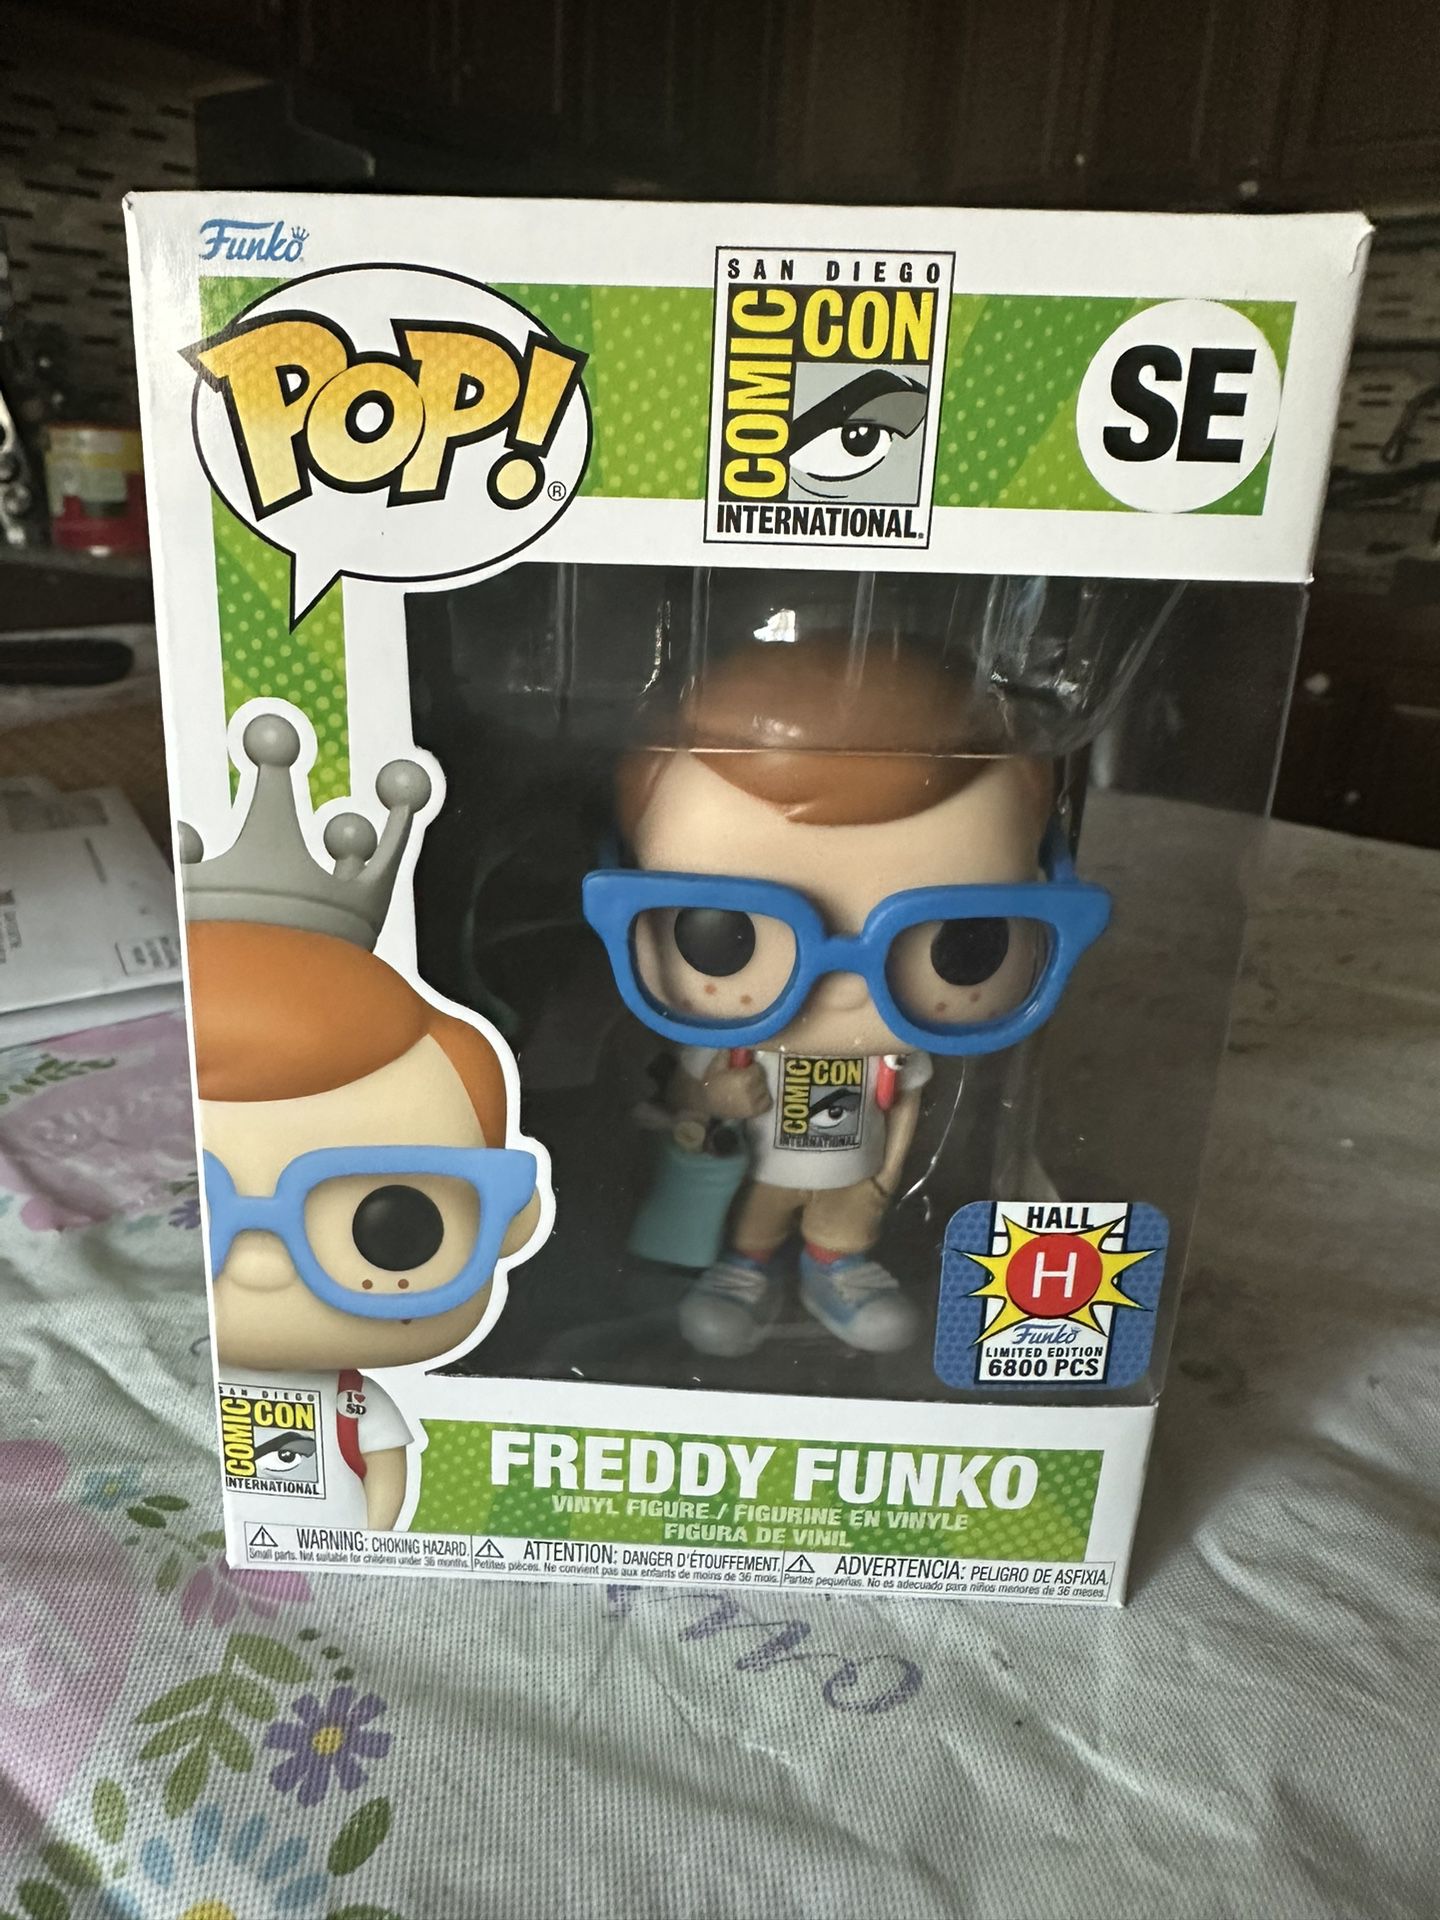 Funko POP! Freddy Funko Hall H LE 6800 Pcs SDCC Exclusive